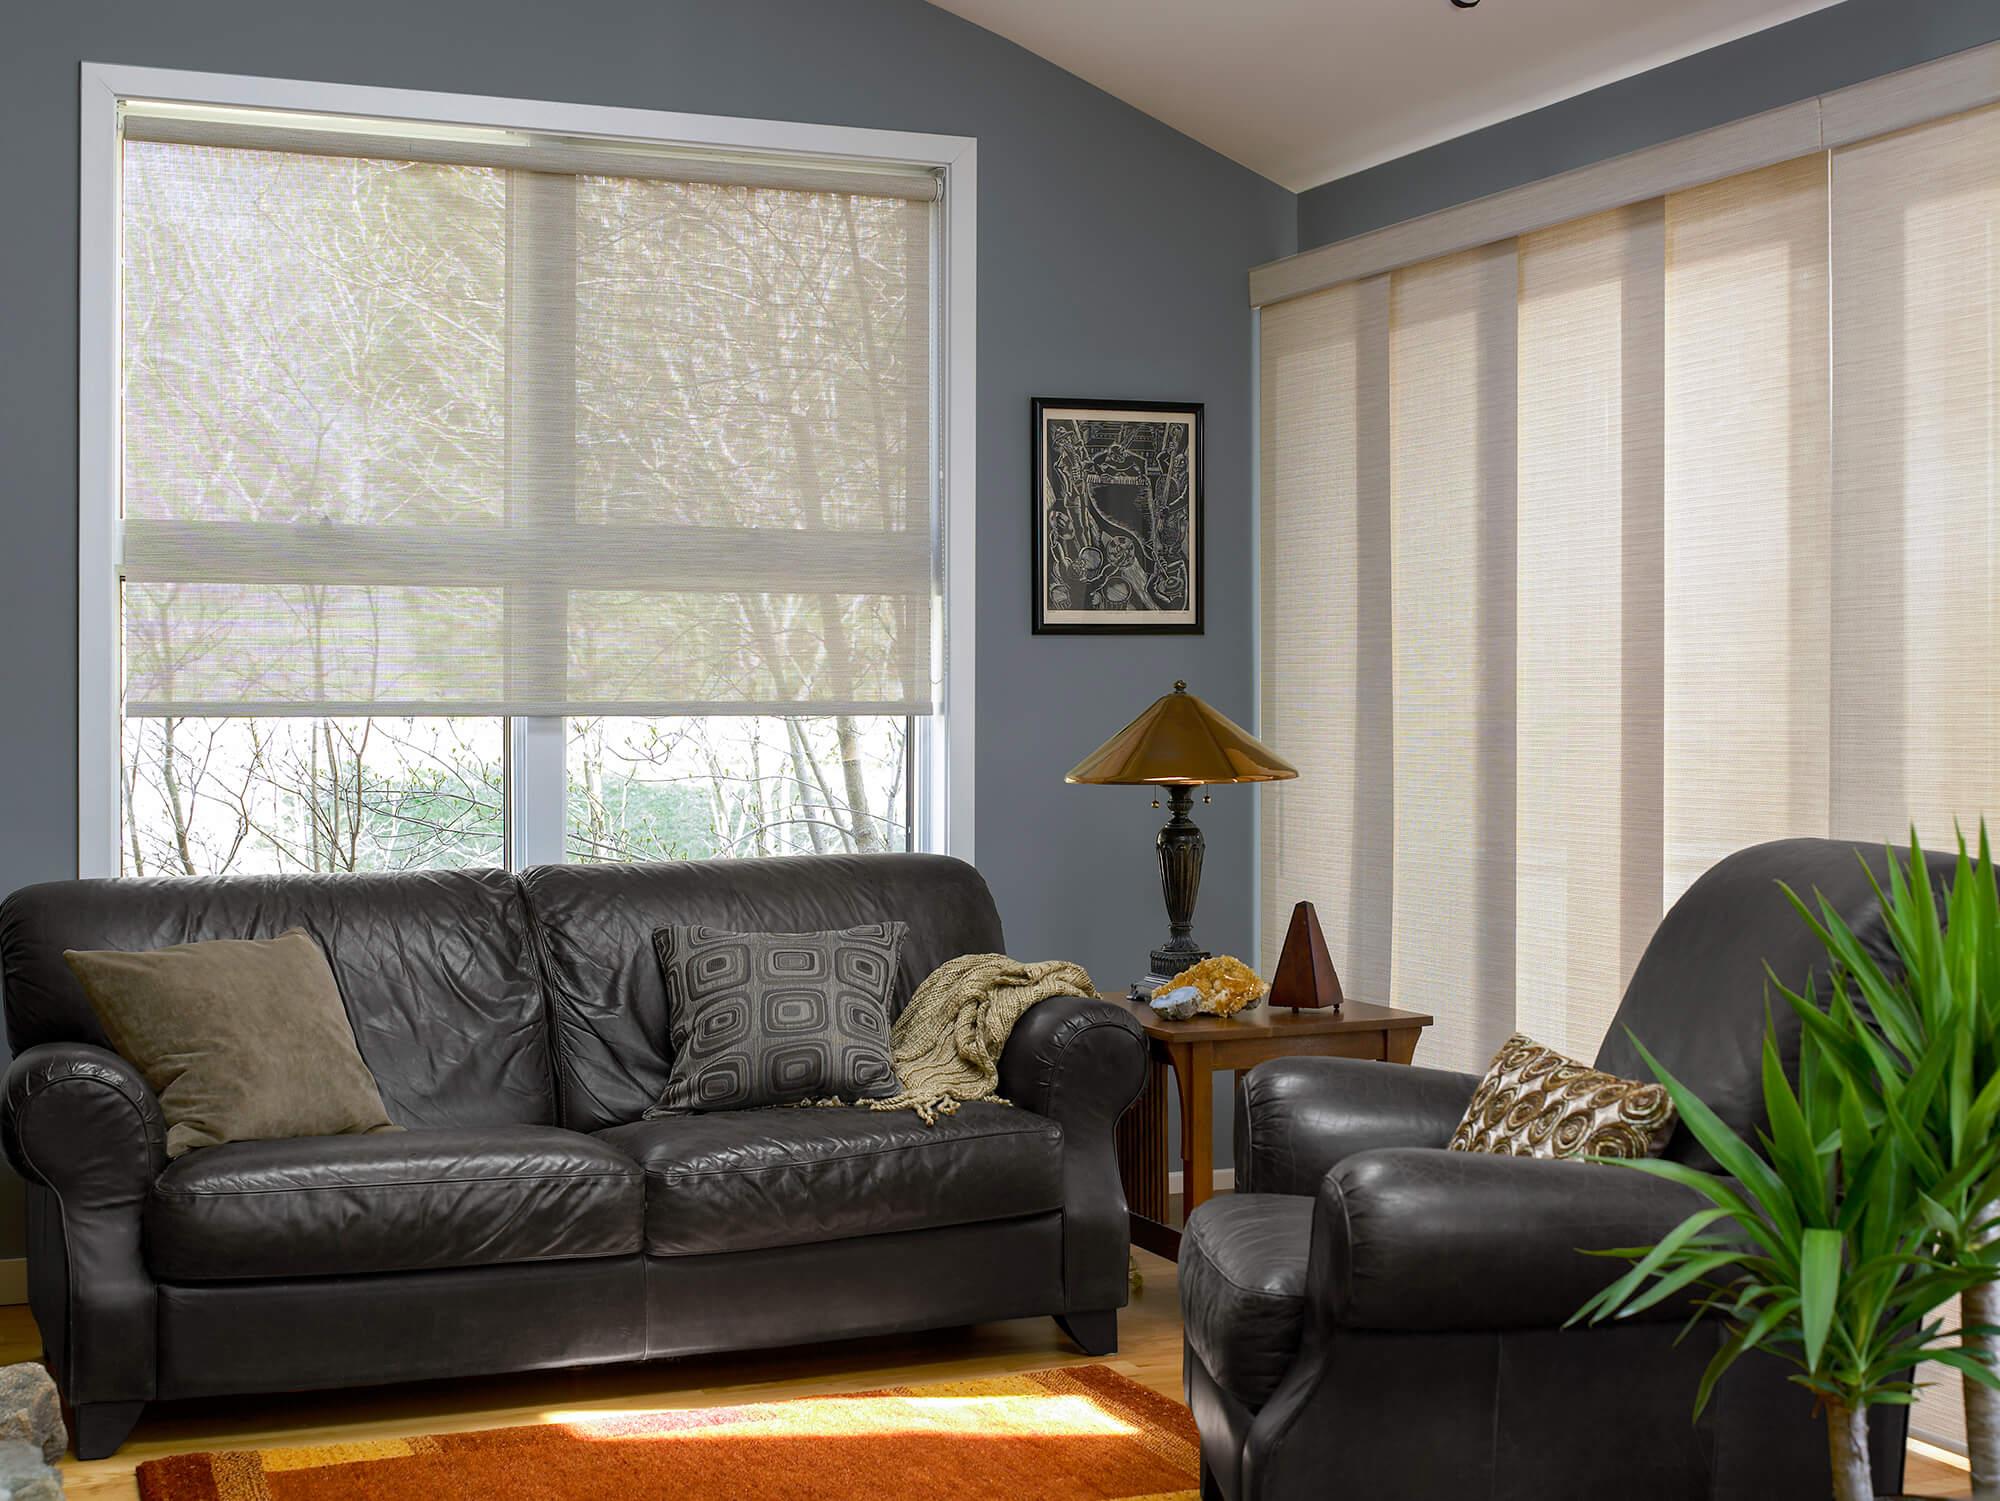 Un salon avec une fenêtre recouverte d’une toile solaire et une porte vitrée avoisinante embellie avec des stores à panneaux coulissants confectionnés avec le même tissu que celui de la toile.